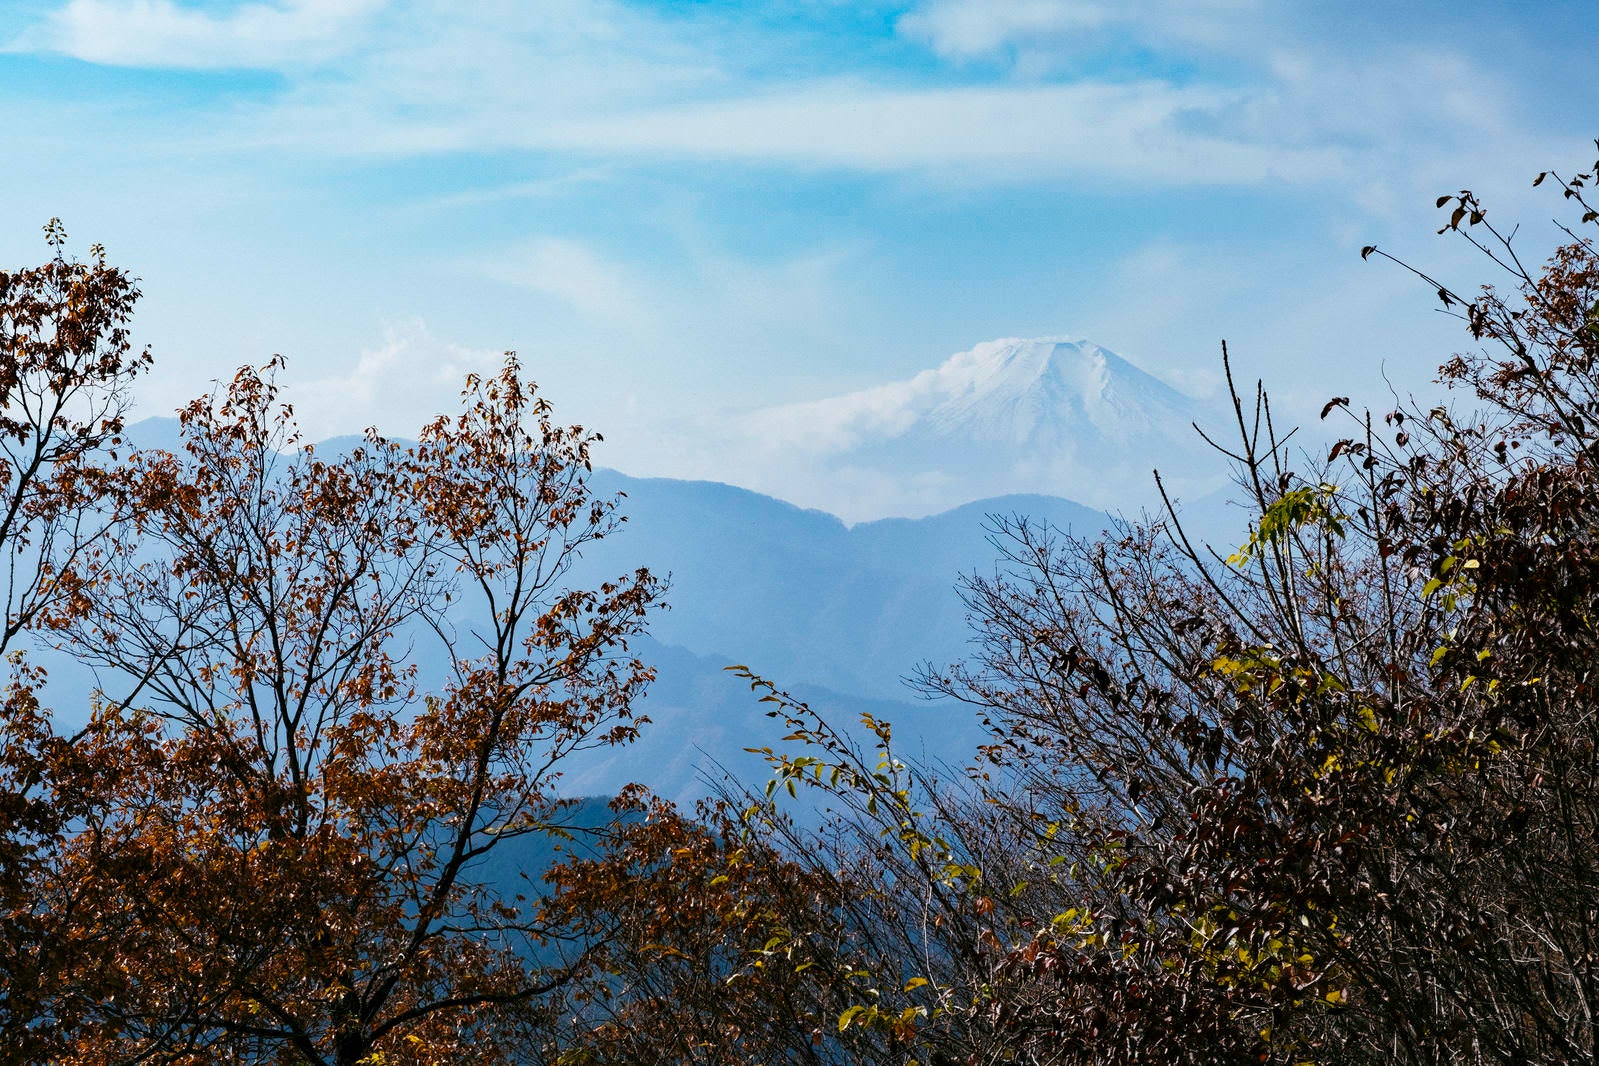 「秀麗富岳倉岳山から見る富士山」の写真